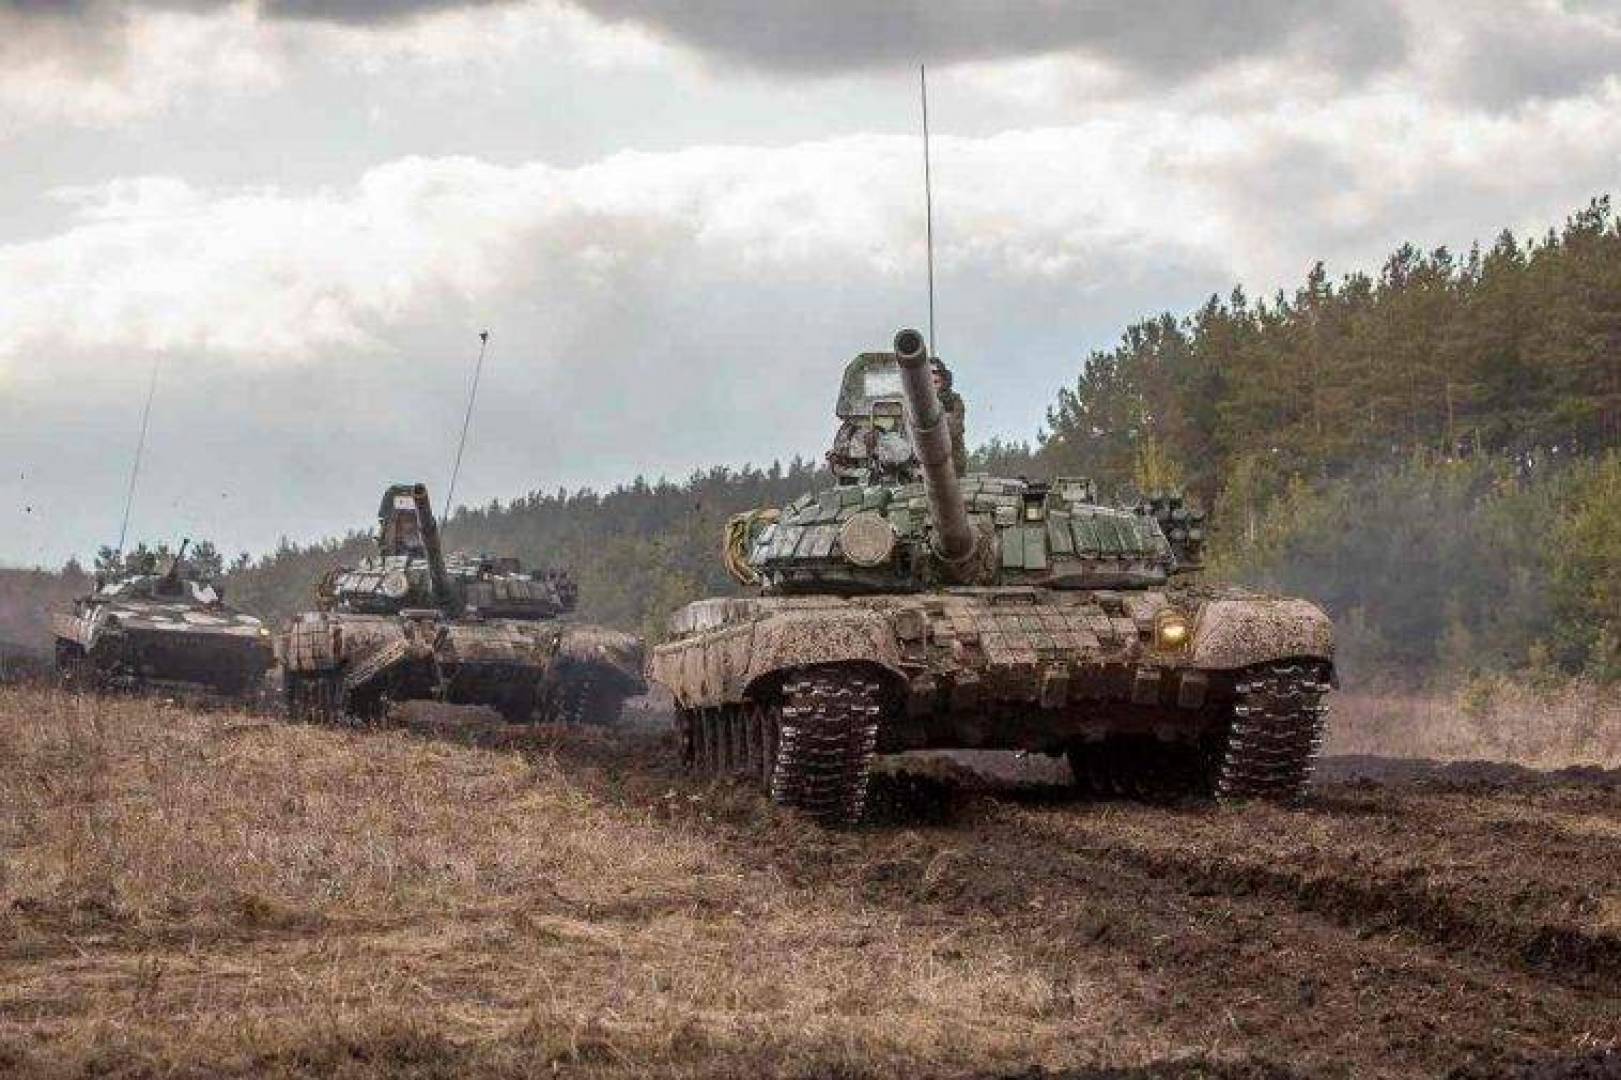 لحمايتها من الصواريخ الموجهة .. روسيا تجهّز دباباتها بوحدات حماية مطوّرة